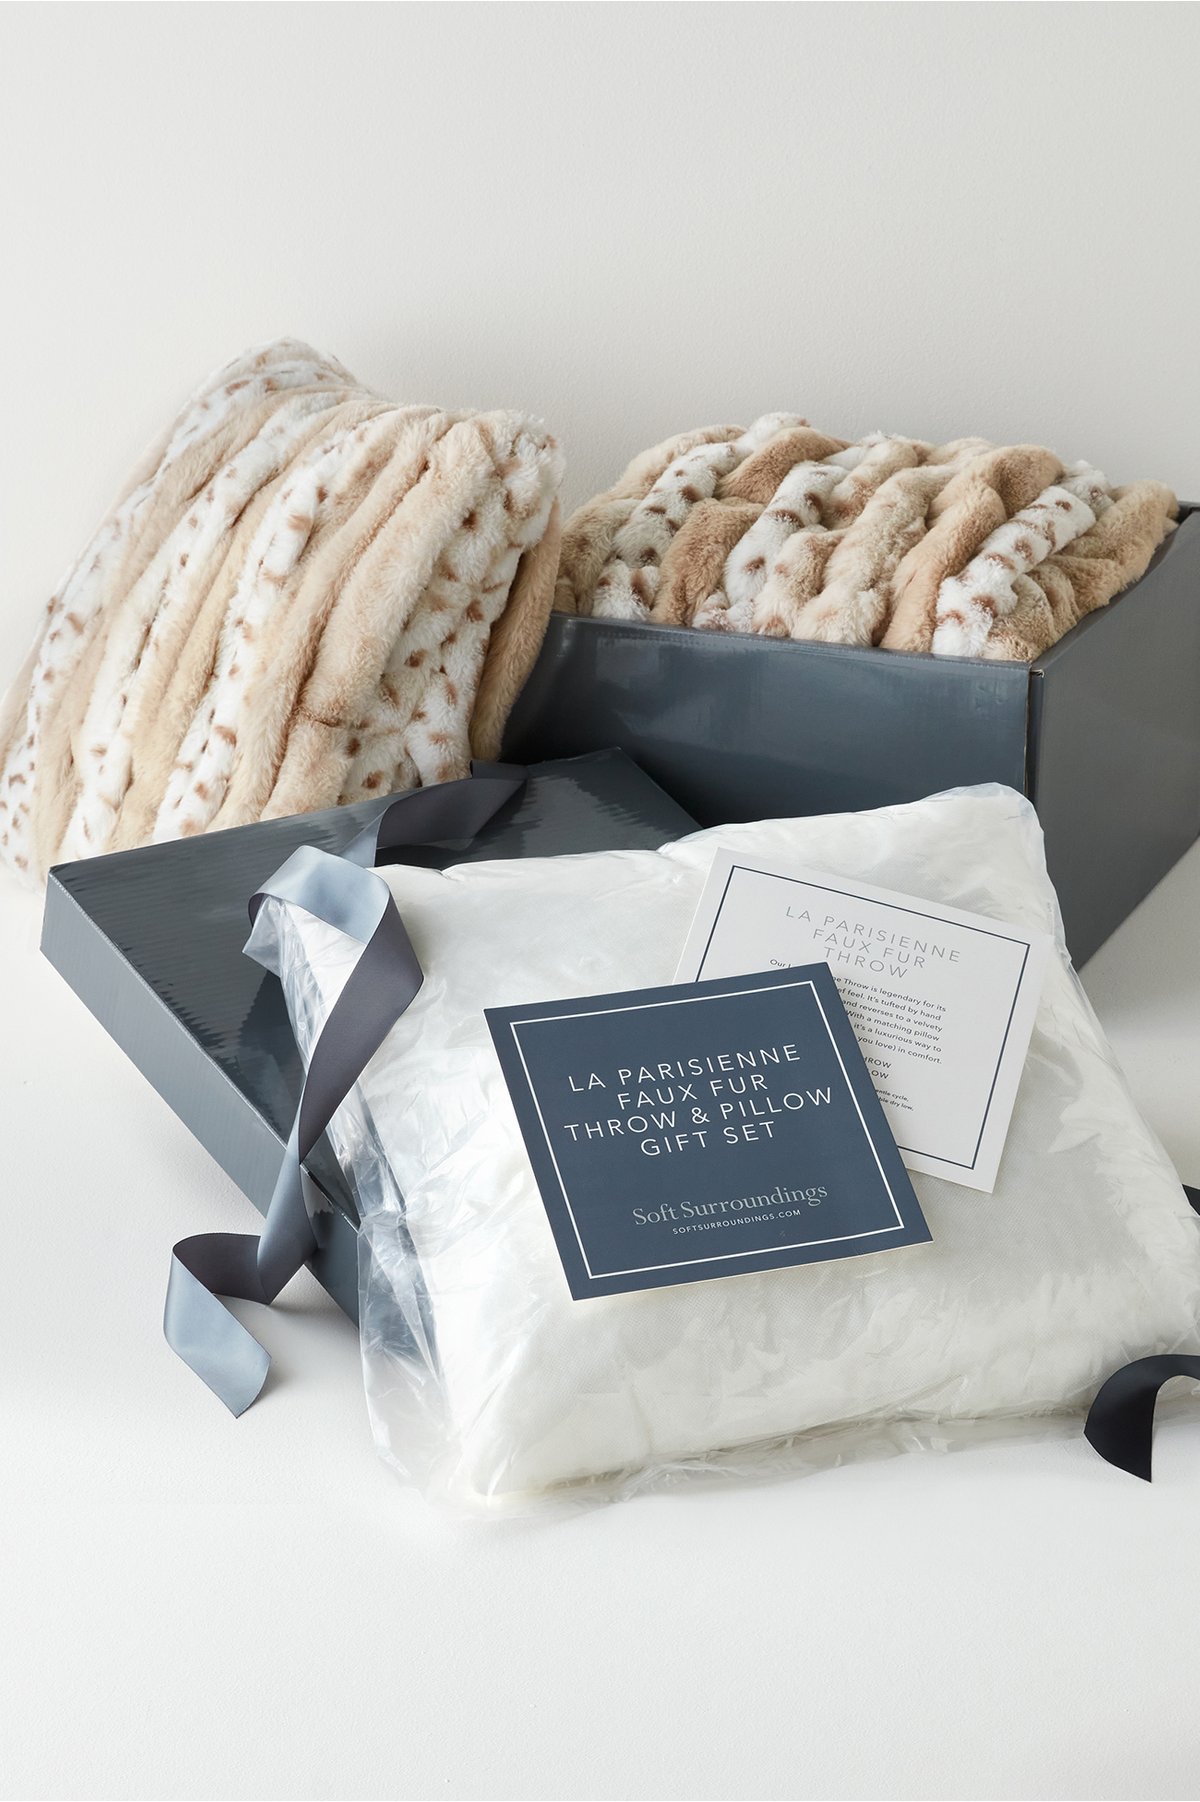 La Parisienne Gift Box Bundle by Soft Surroundings...